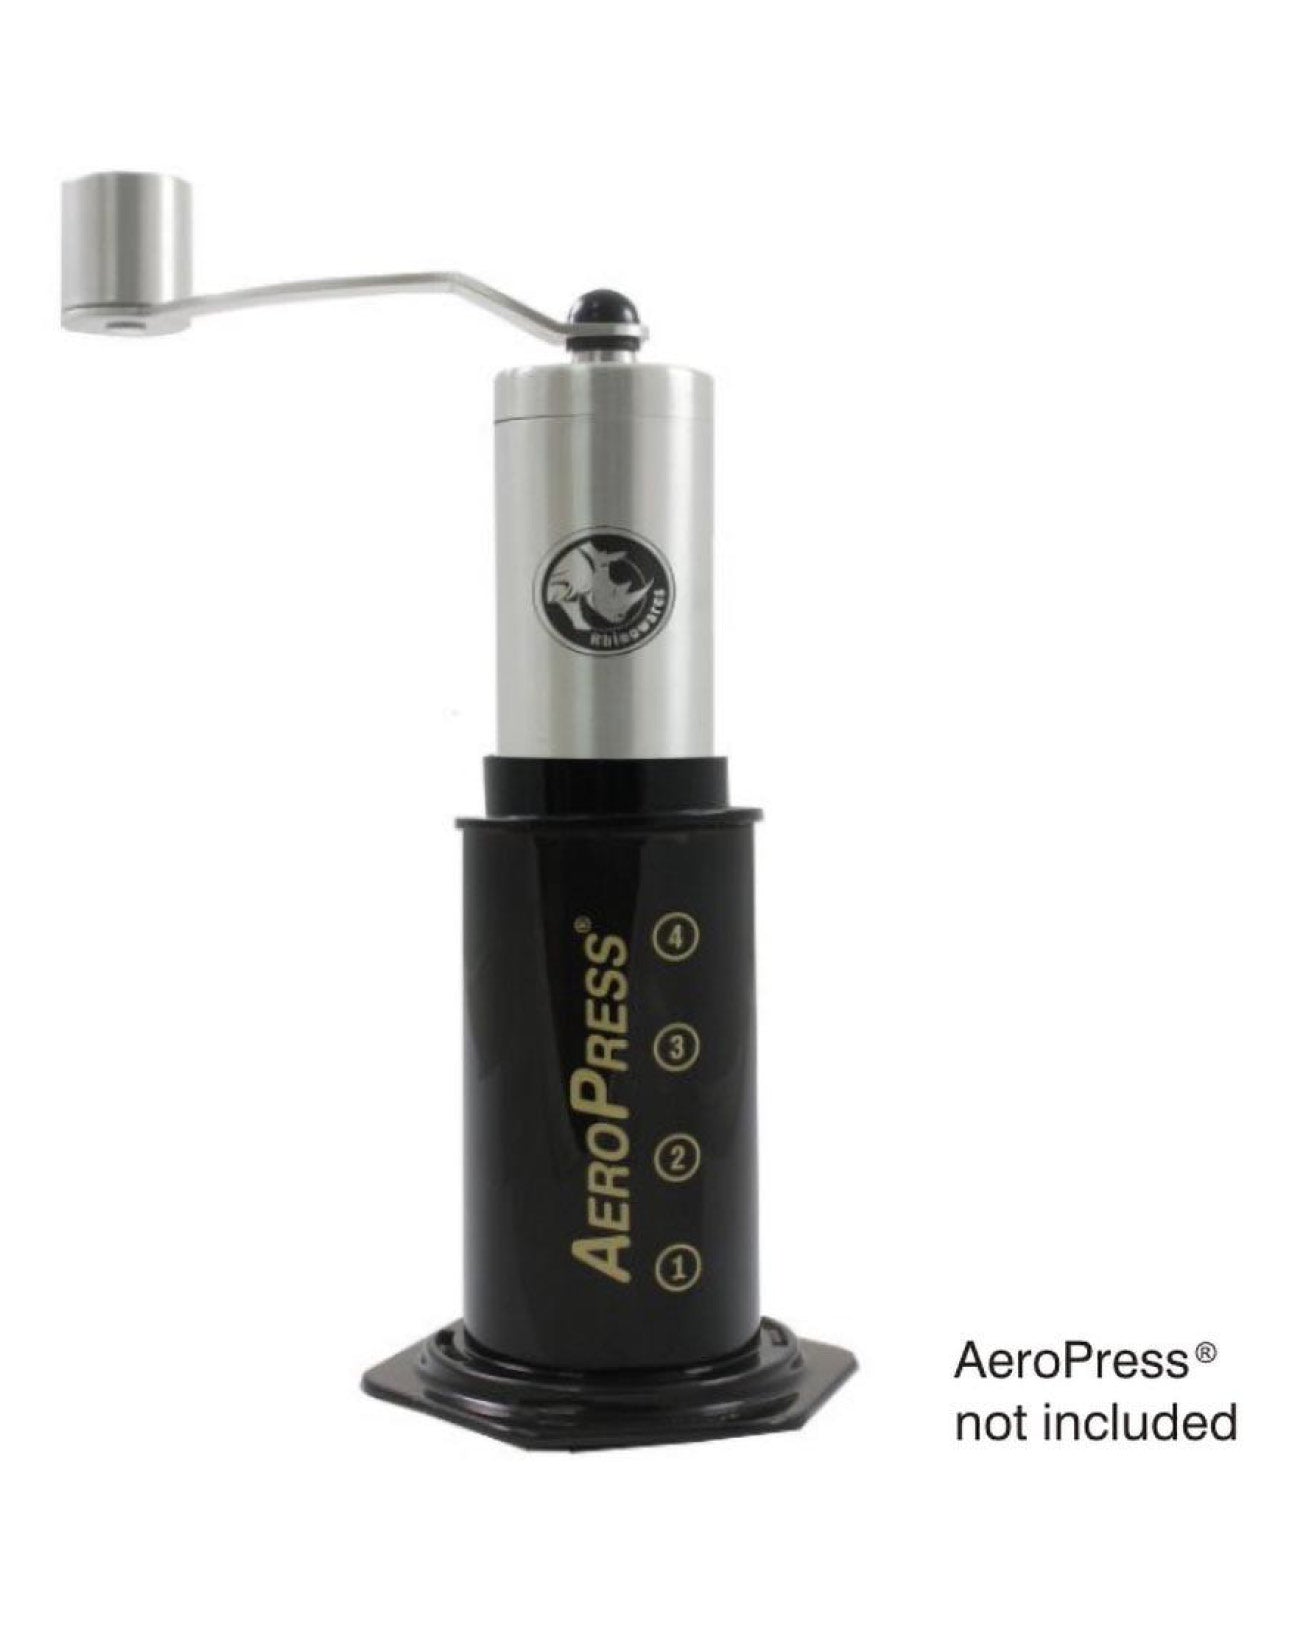 Rhino Handmühle klein mit Adapter für Aeropress - Municoffee Company GbR